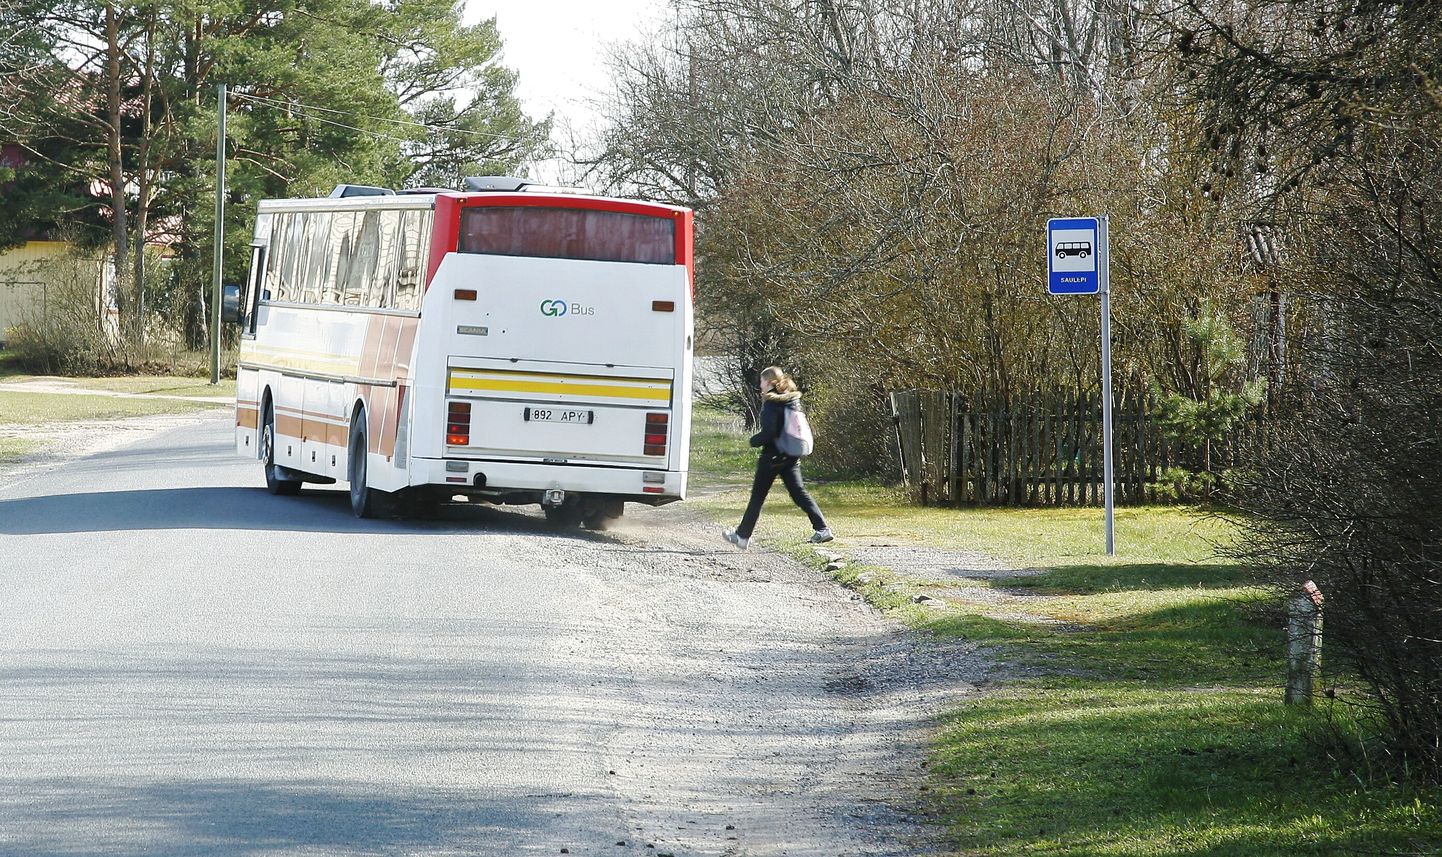 Pärnu-Tallinna ja Pärnu-Tartu Gobusi kaugliinidele saab nüüd osta bussipileteid ka algusega vahepeatustest. Foto on illustreeriv.